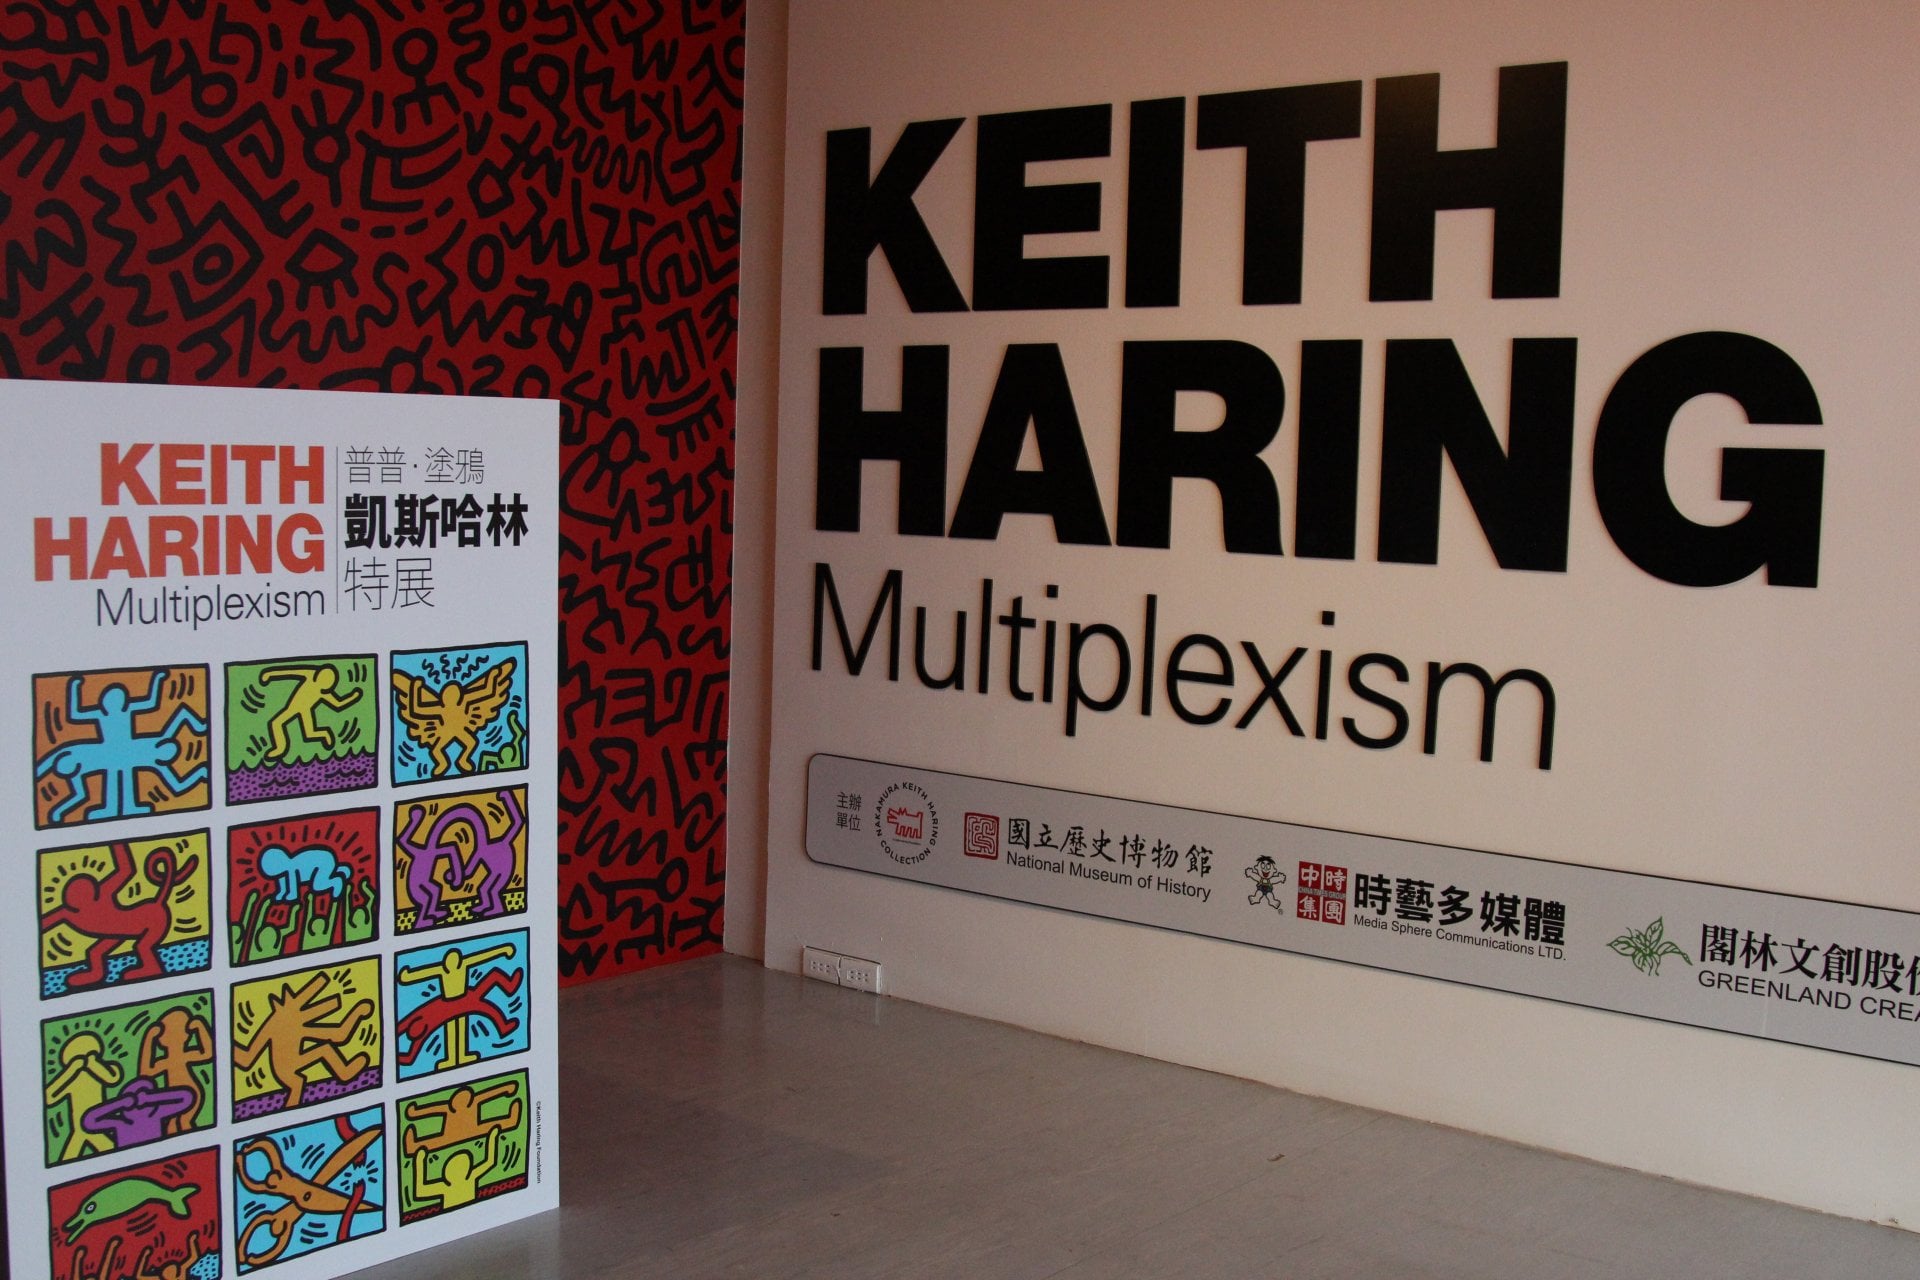 ＃ Keith Haring 名作首次來台：普普．塗鴉 凱斯哈林特展！ 7